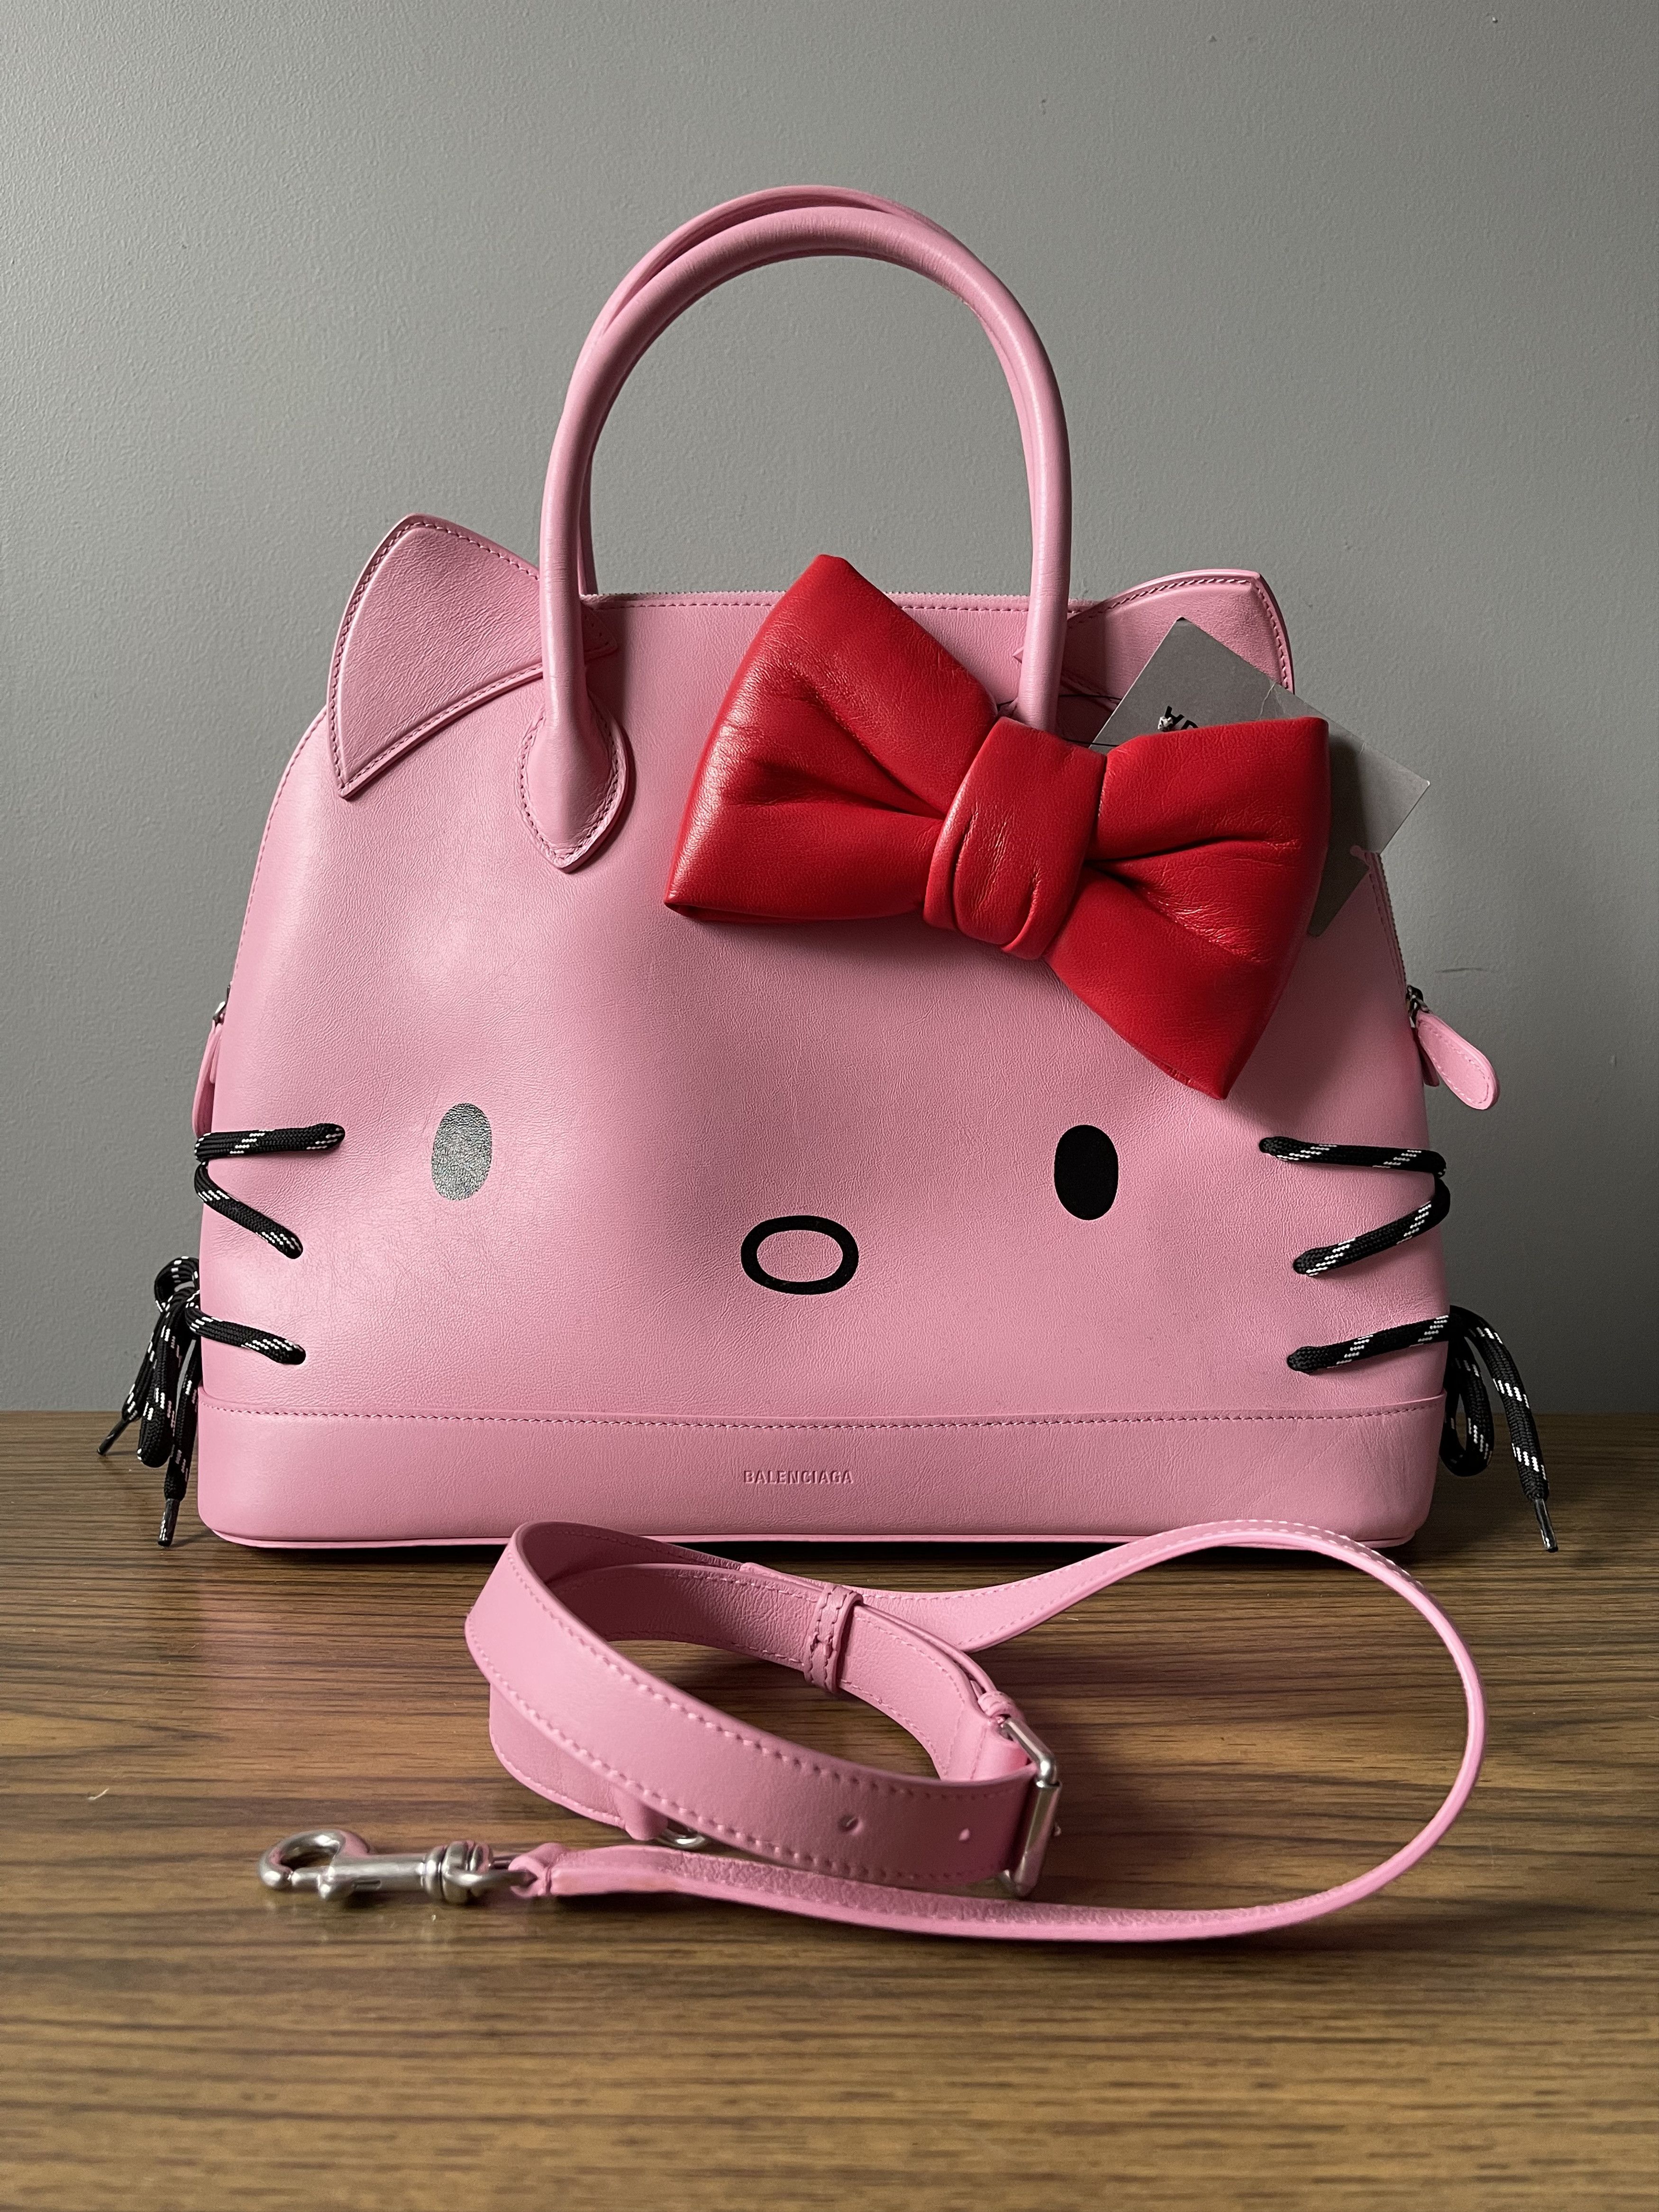 Balenciaga SS20 pink hello kitty bag SZ:S